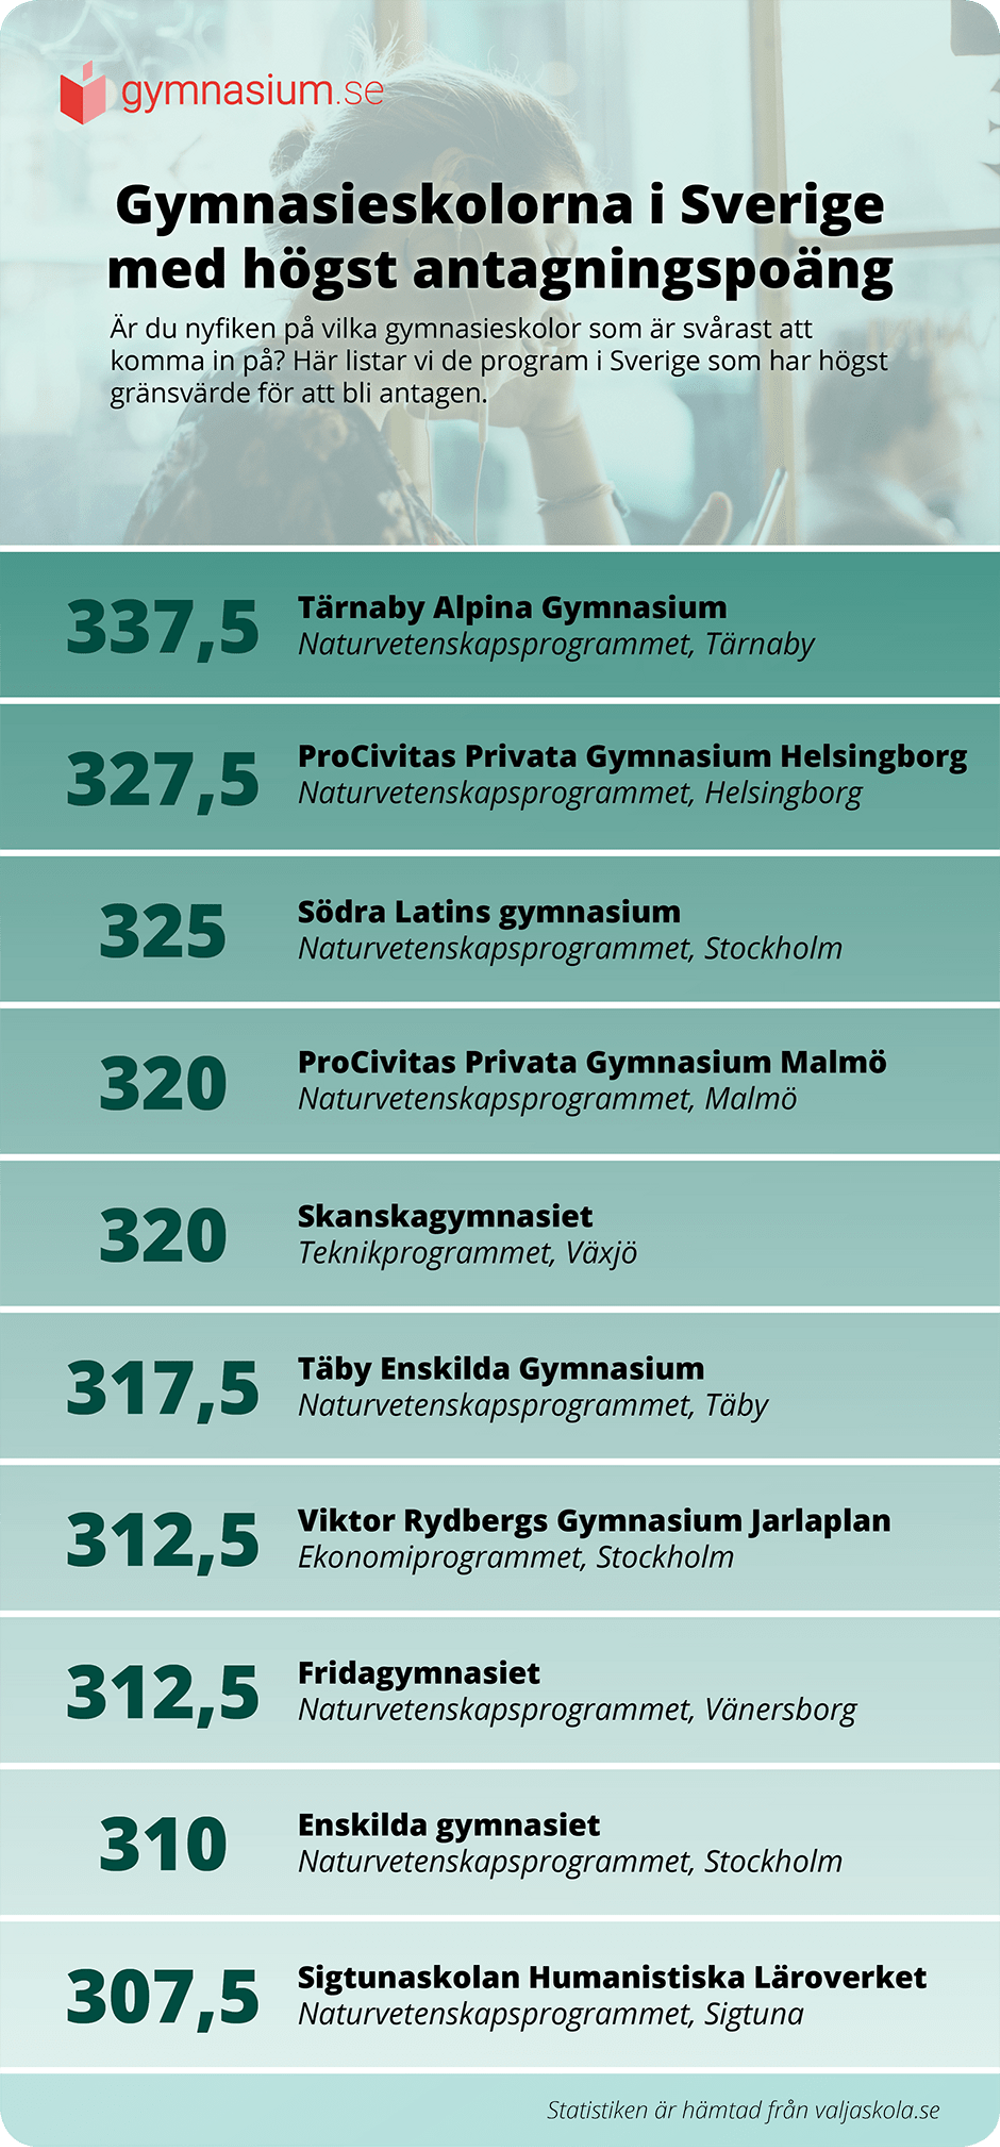 Lista över vilka program som har högst gränsvärde för att bli antagen. 
Statistiken är hämtad från valjaskola.se. 